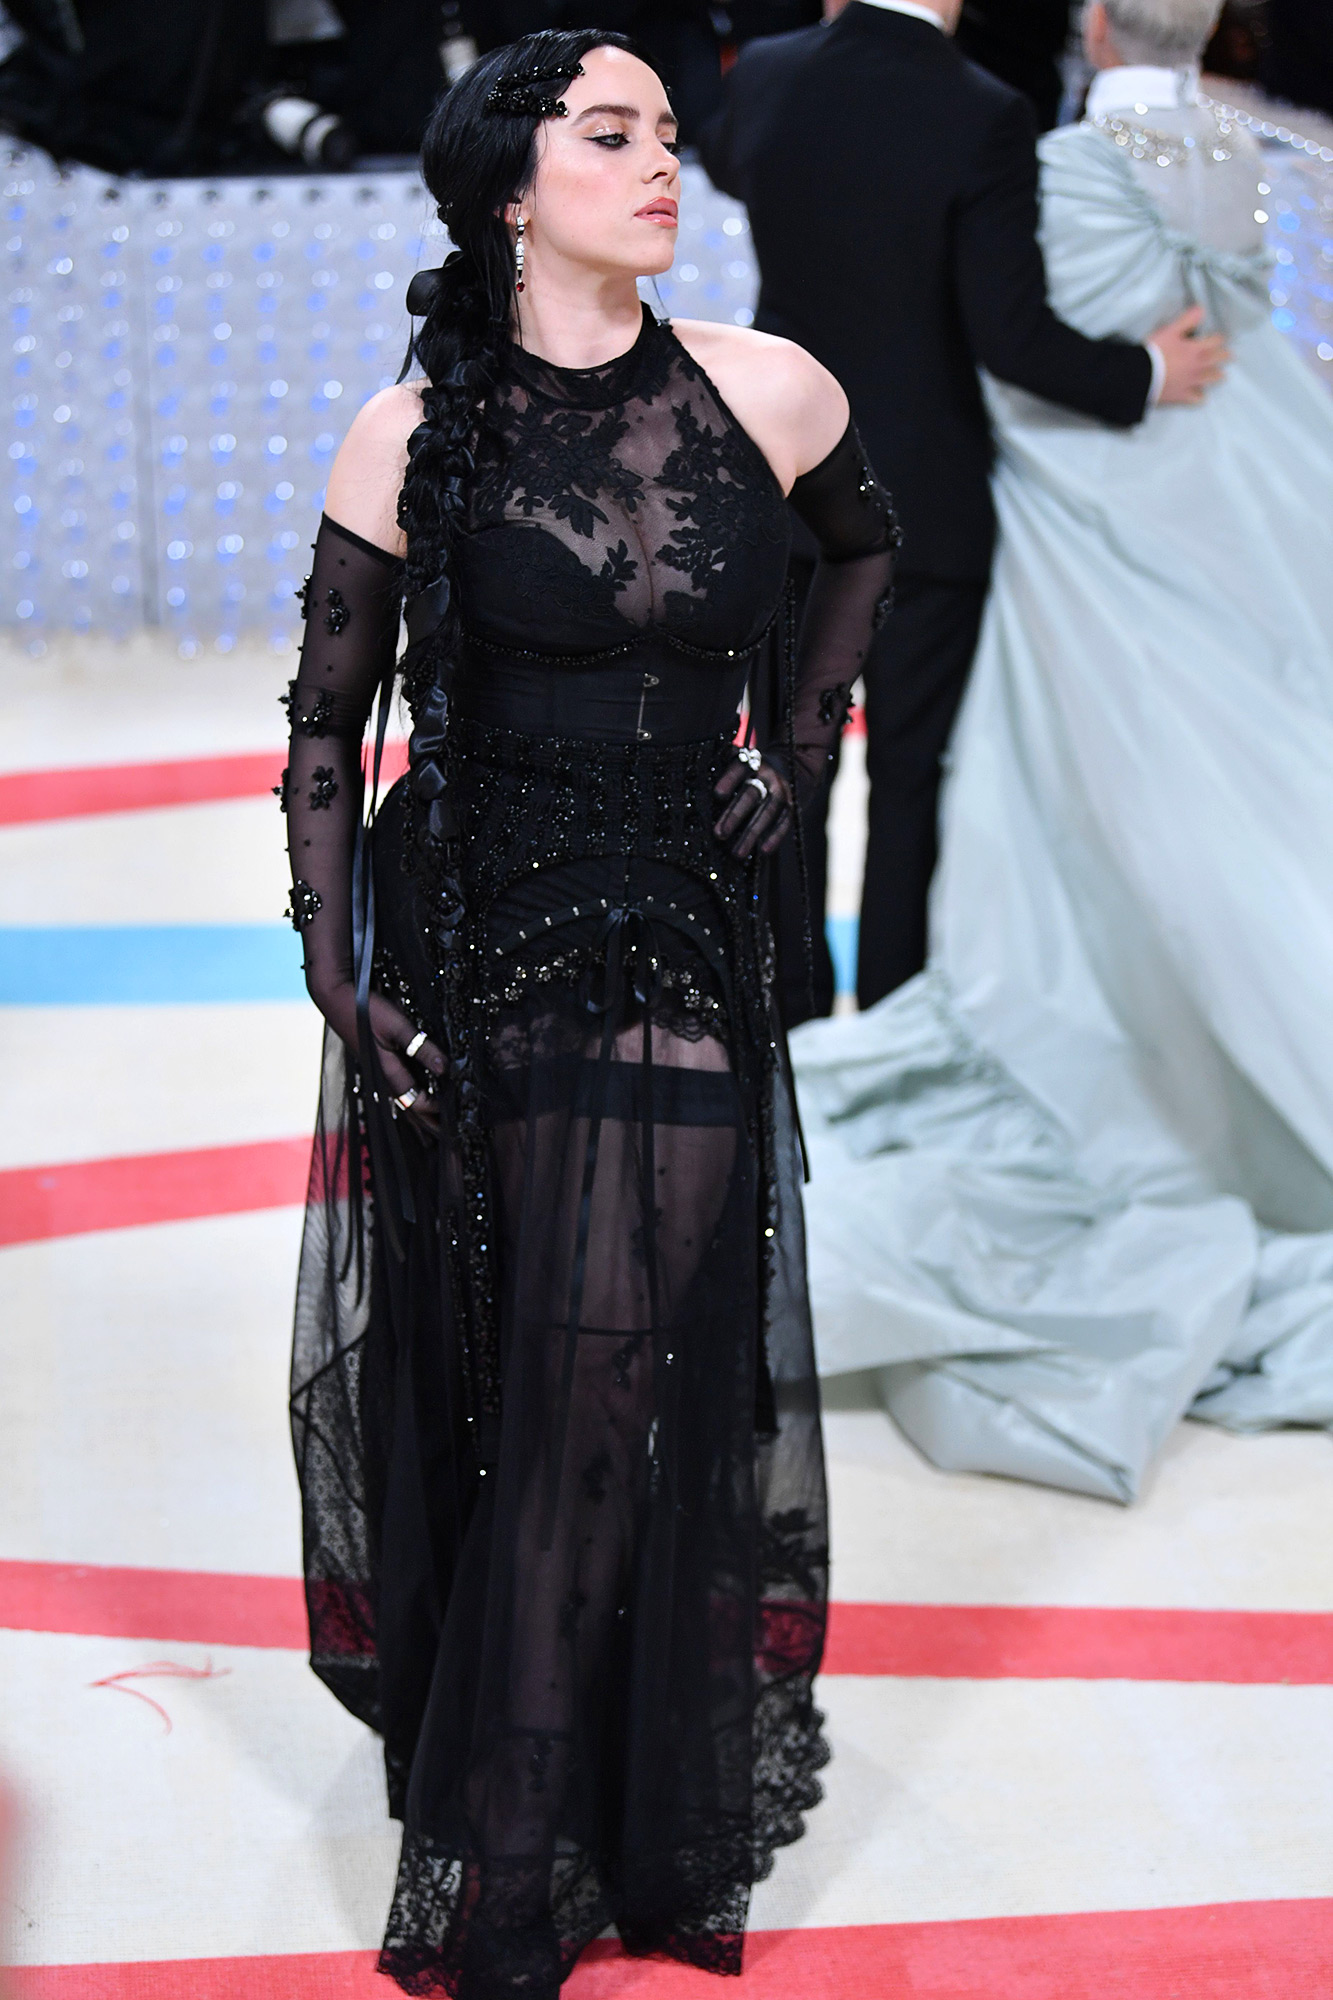 Met Gala 2023: Billie Eilish Stuns in Sheer Black Gown